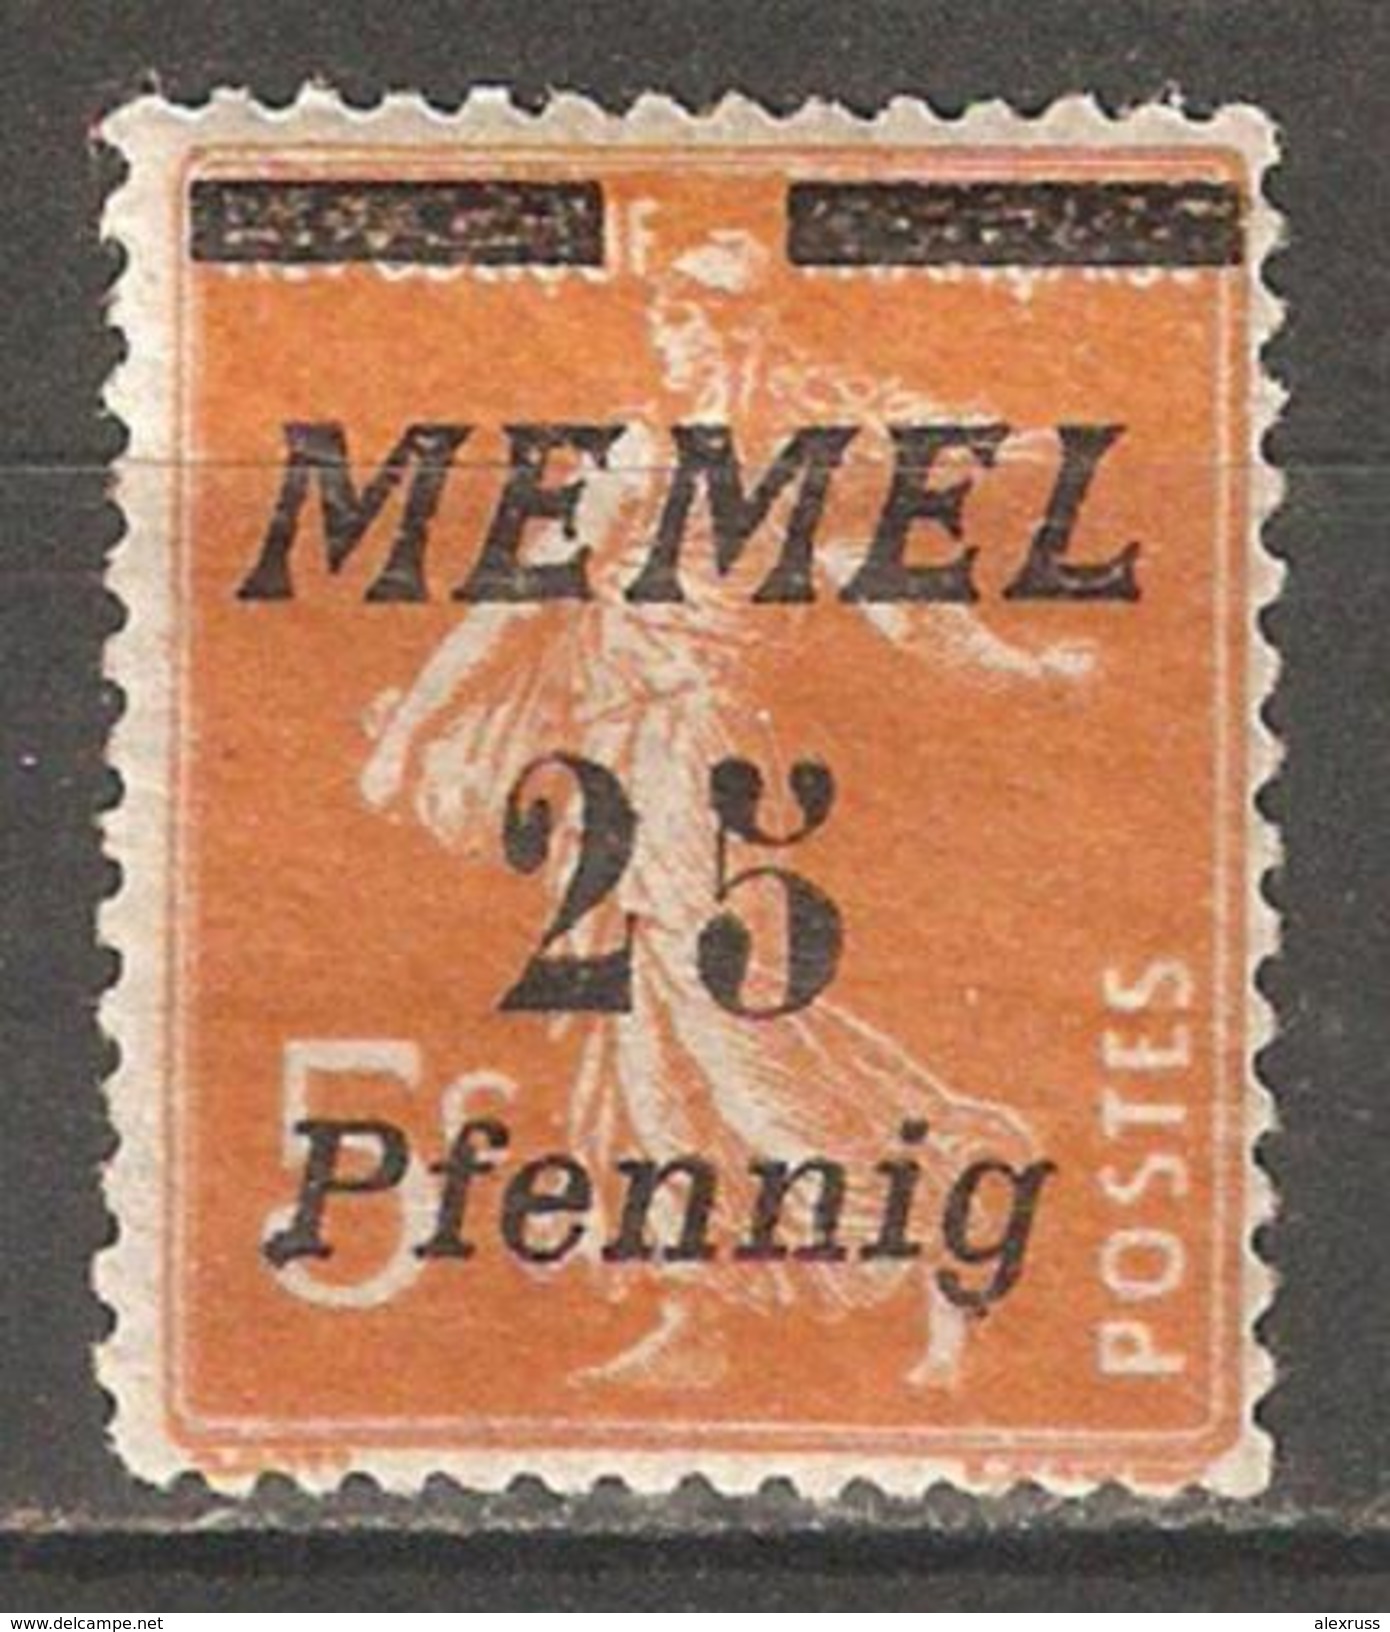 Memel 1922, 25pf On 5c, Scott # 56*, VF Mint Hinged* L2 (A-7) - Nuovi